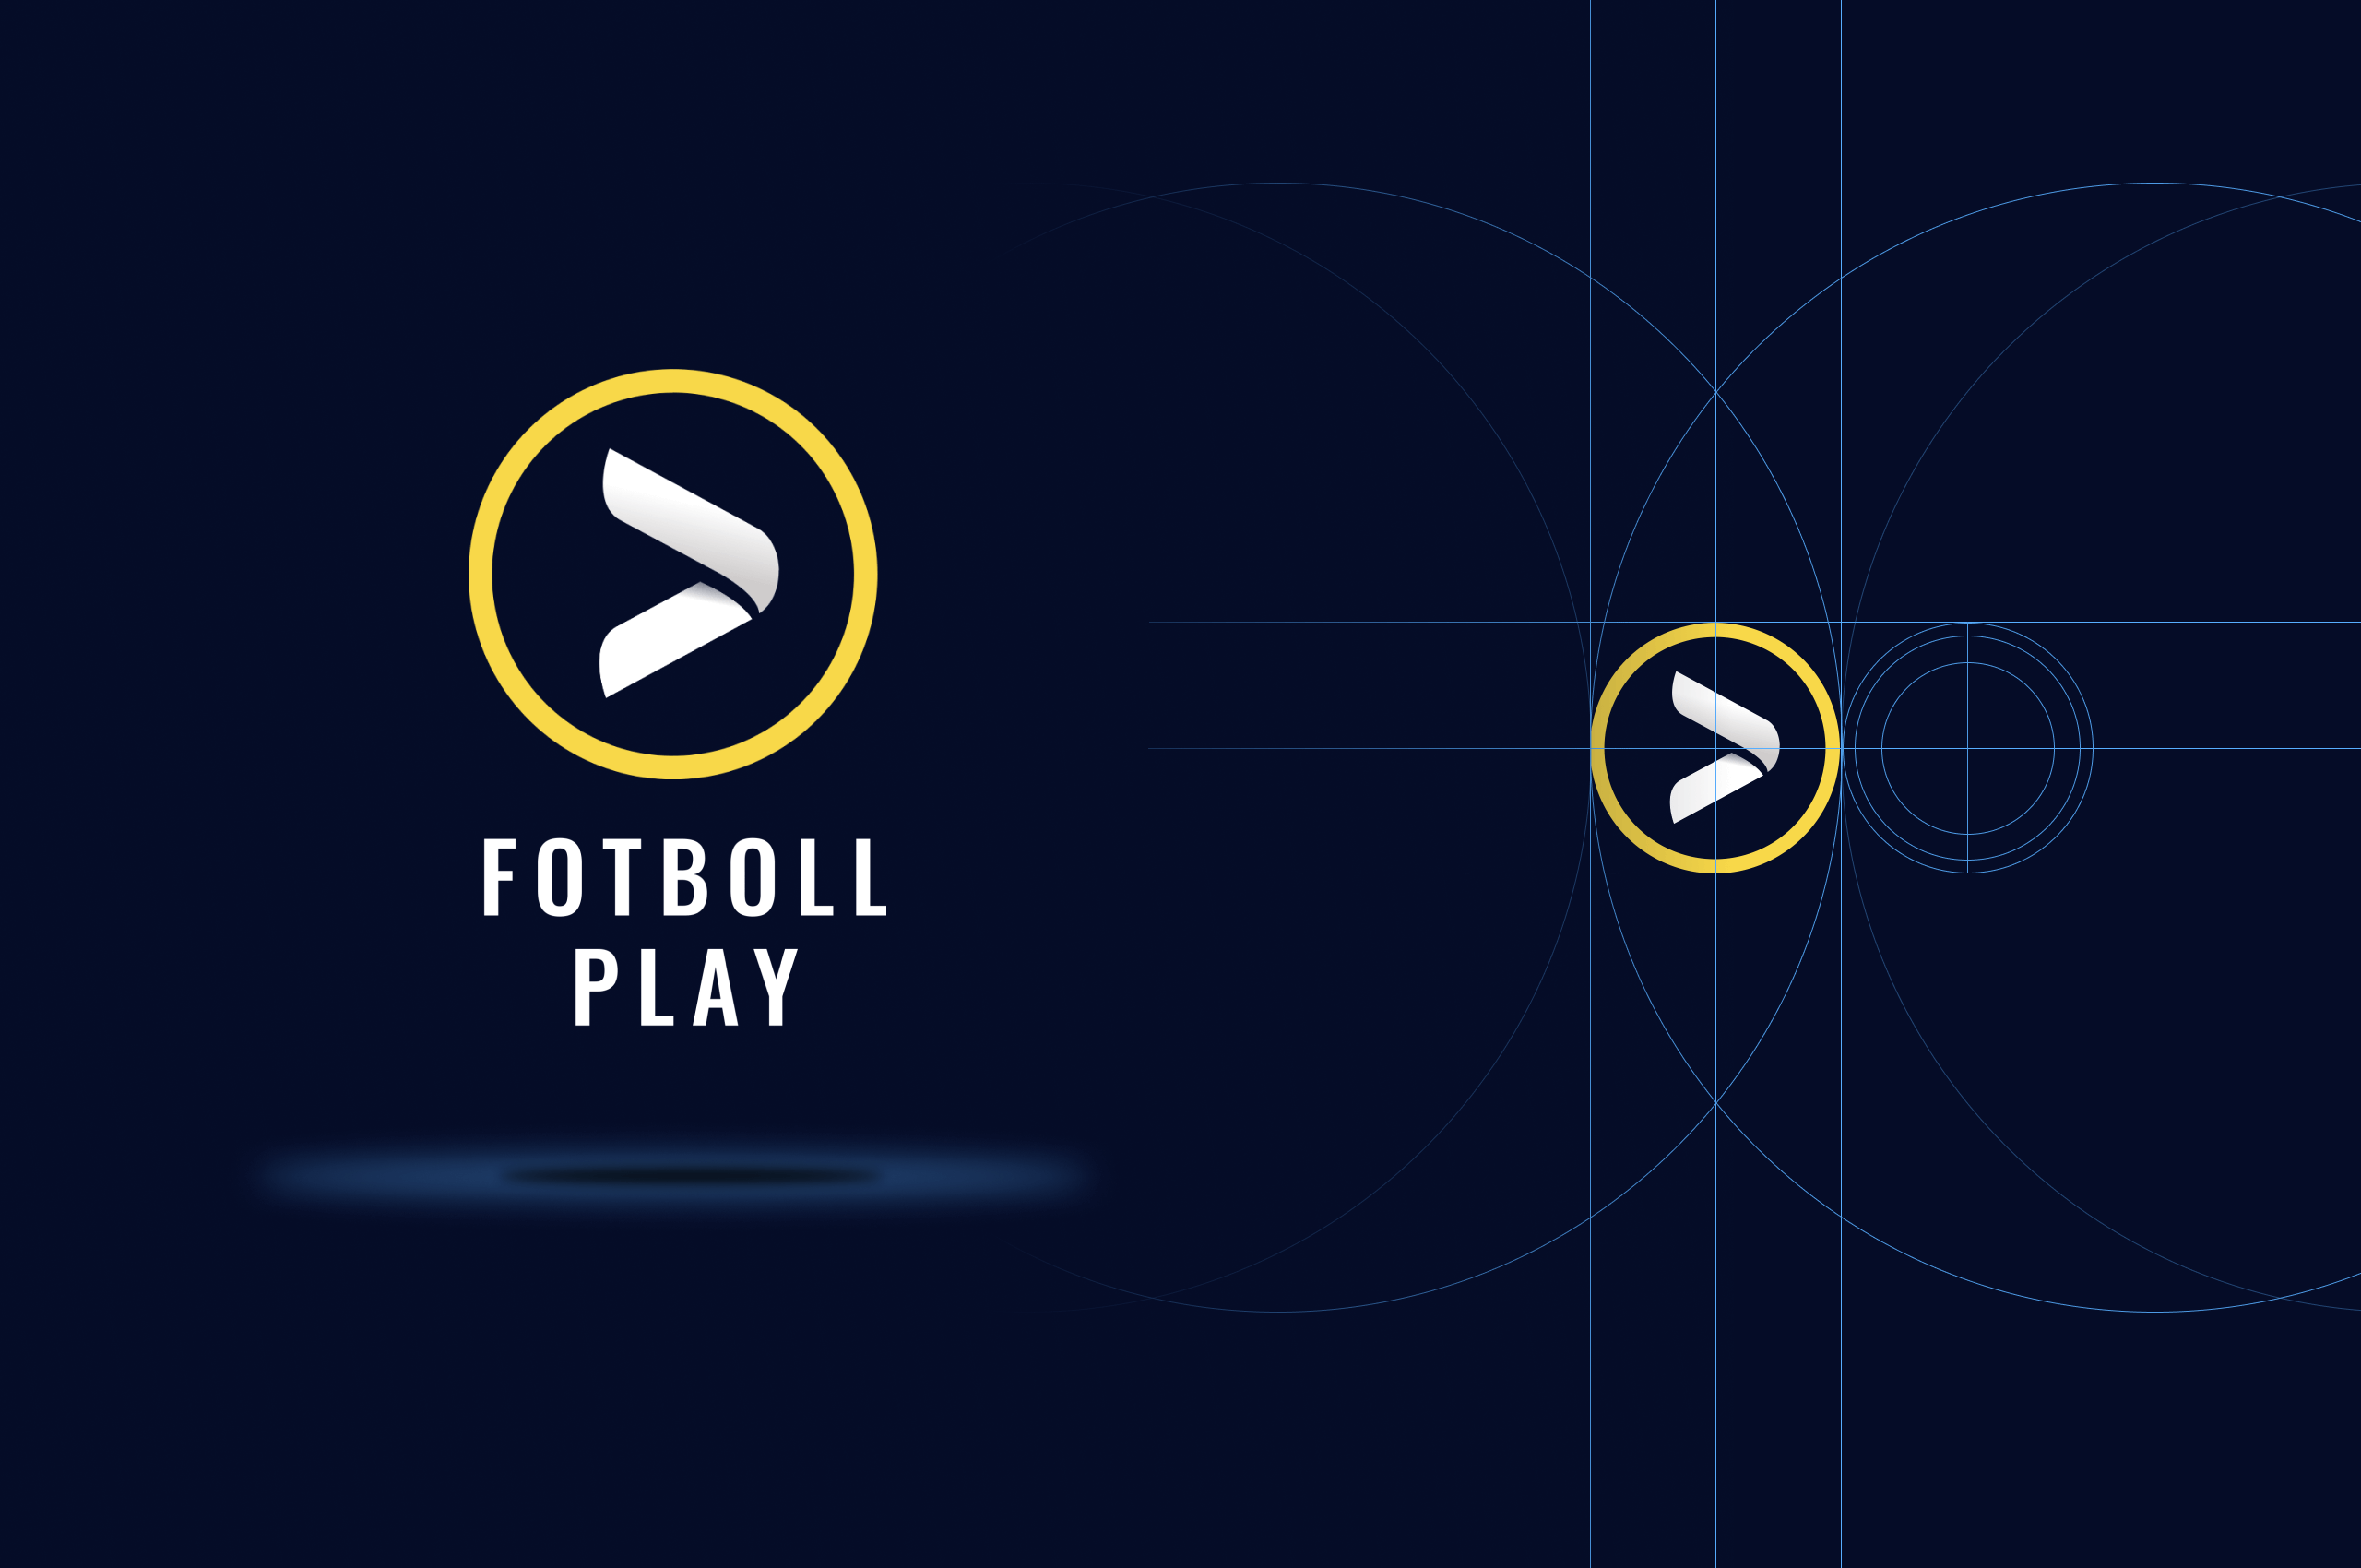 Grau-Fotbollplay-logo